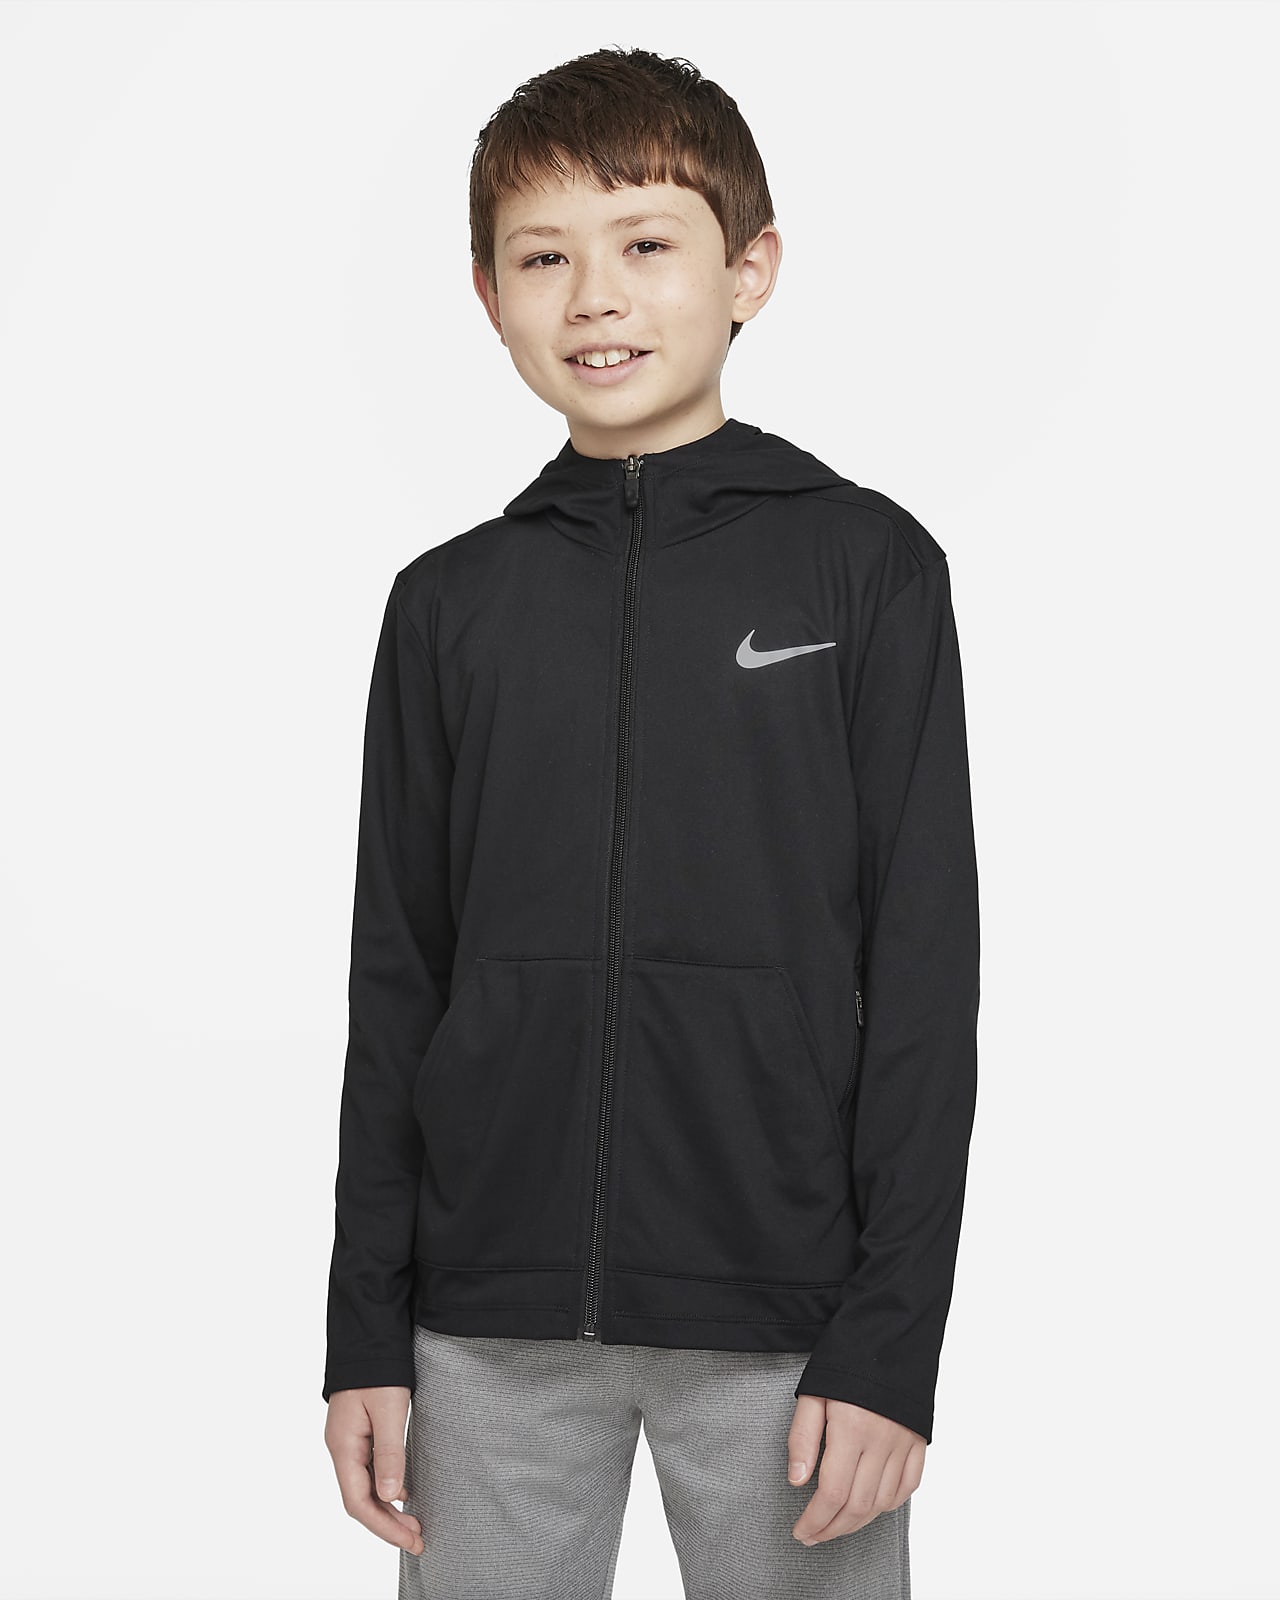 Woud Kruiden Sluit een verzekering af Nike Older Kids' (Boys') Full-Zip Training Hoodie. Nike LU